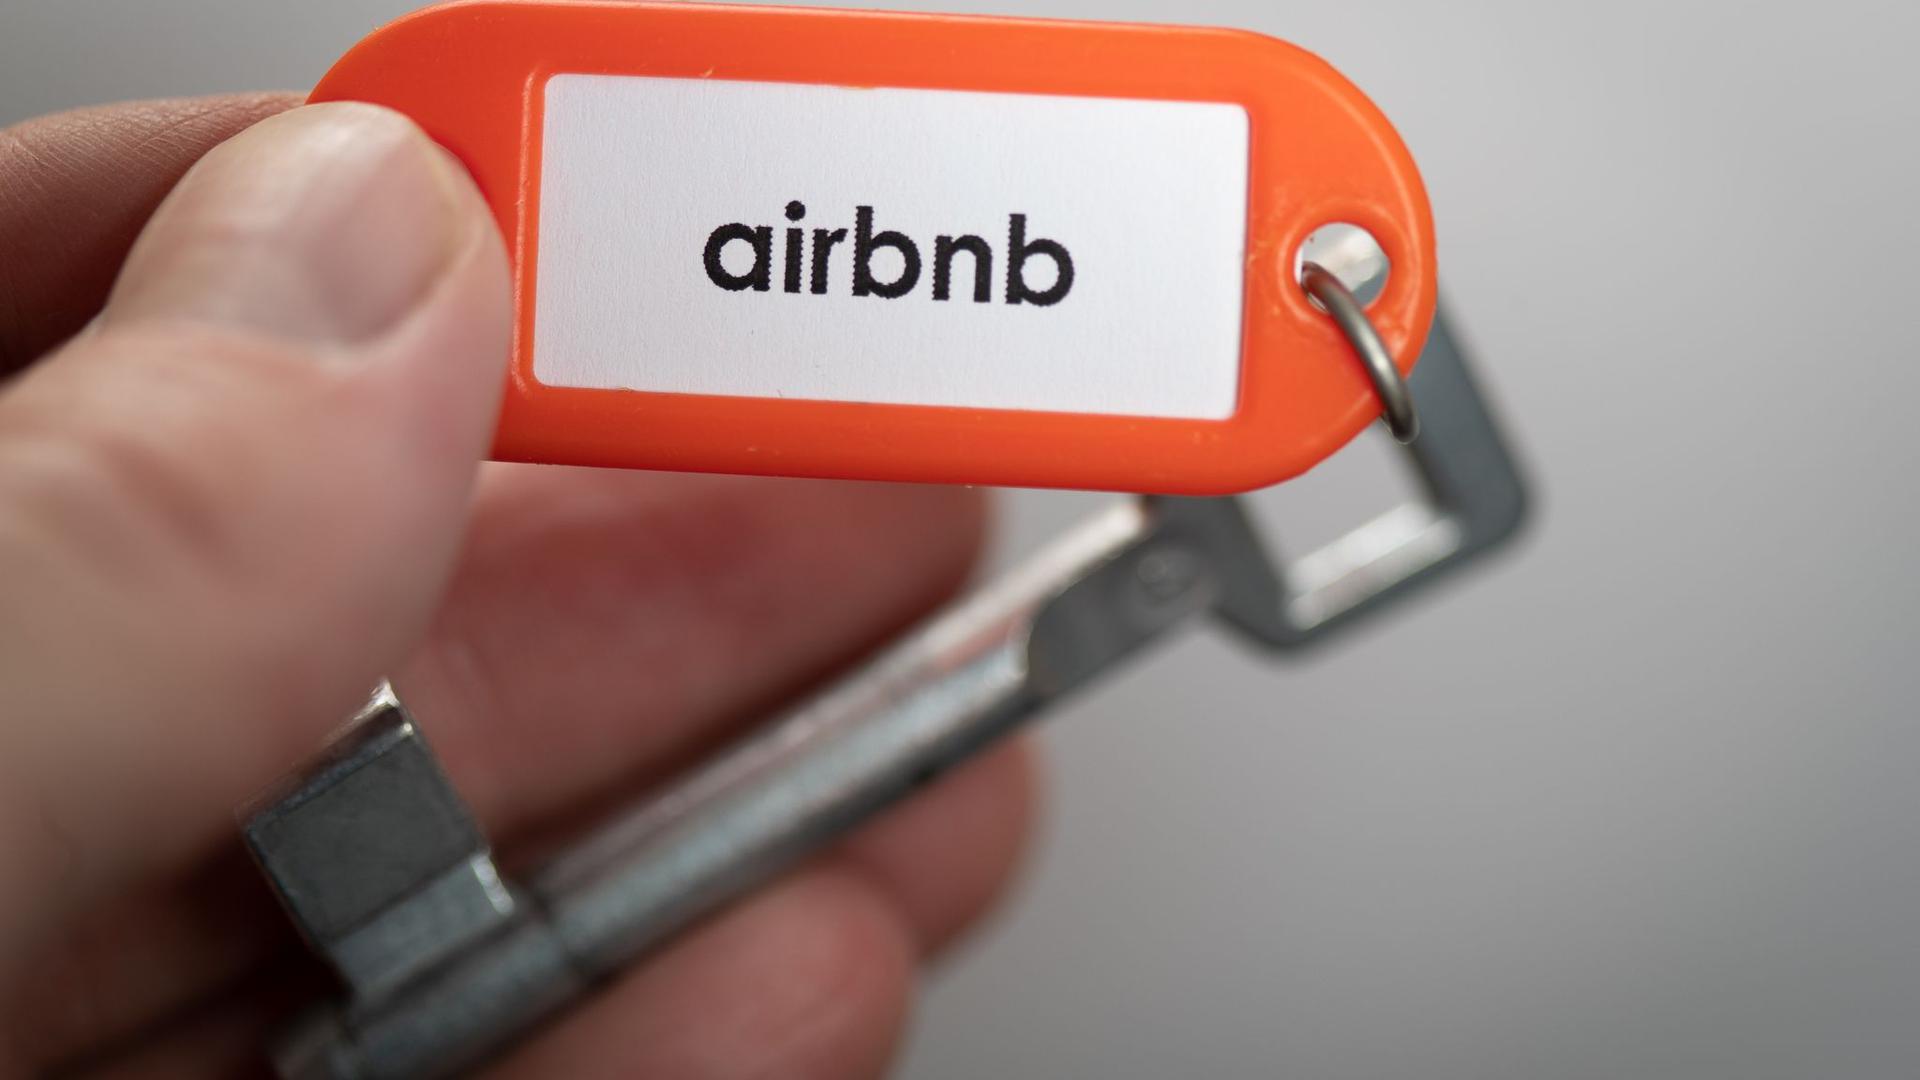 „airbnb“ auf einem Schlüsselanhänger.